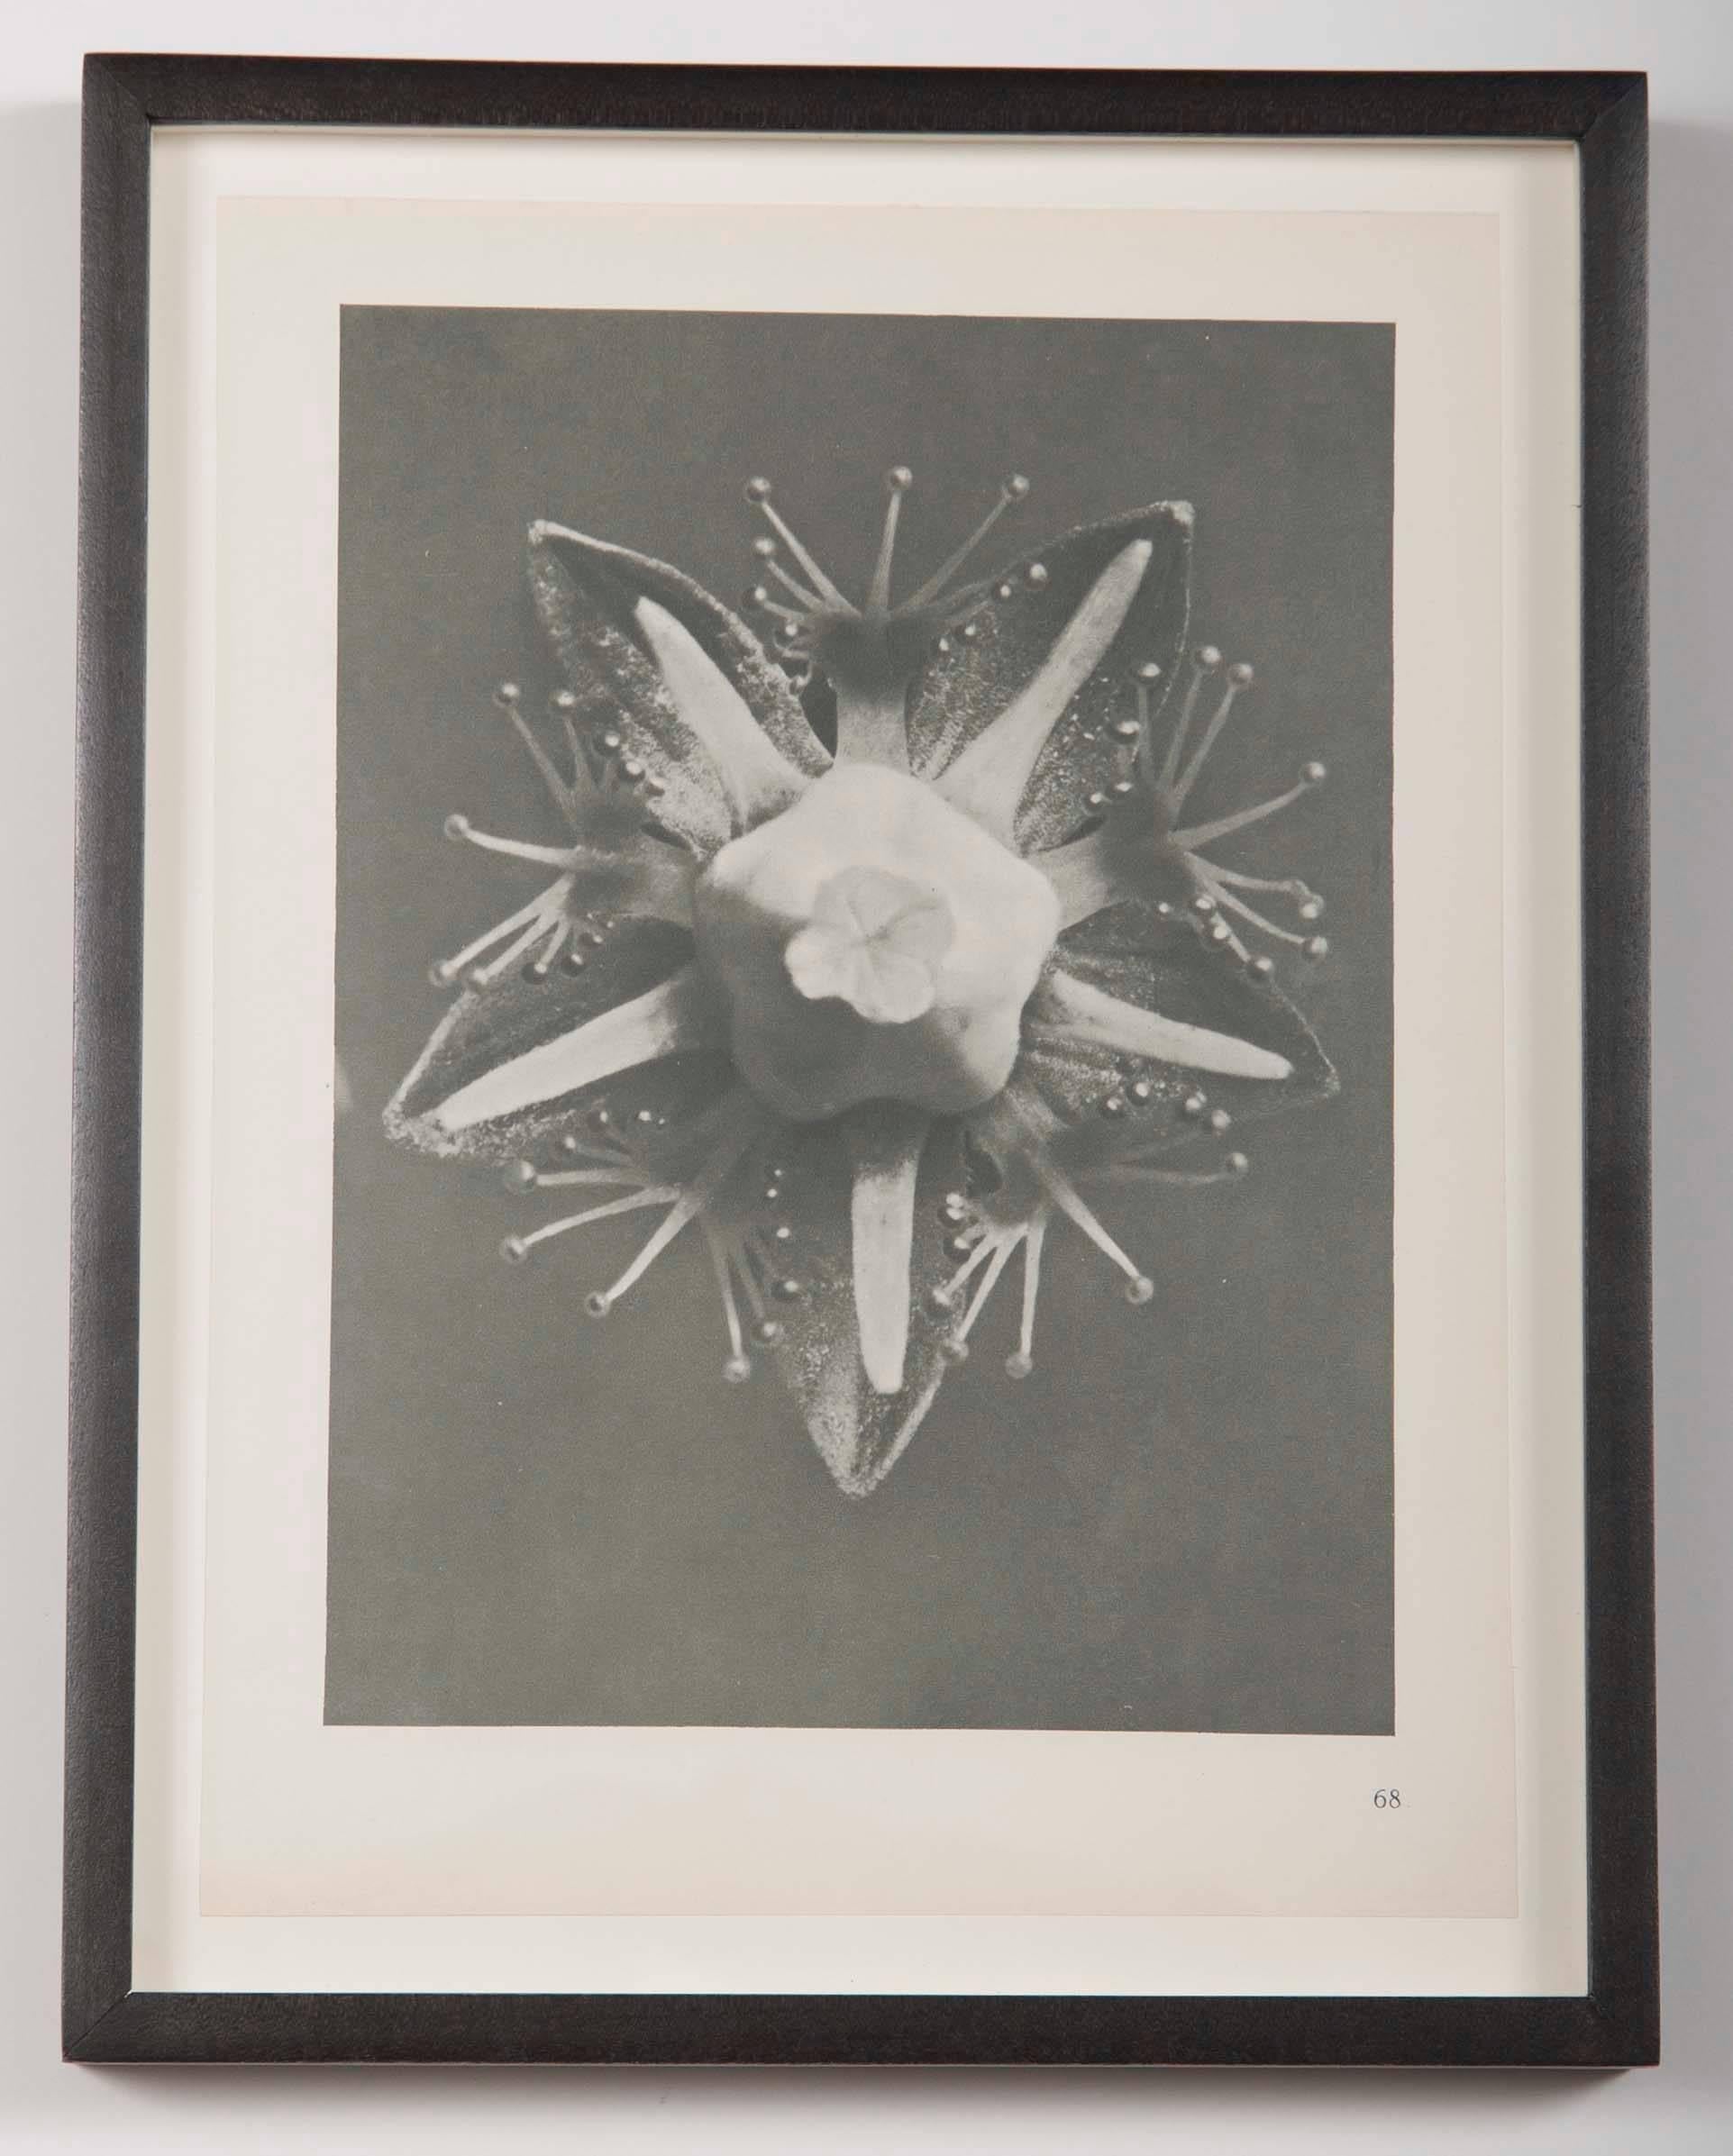 Set of six botanical photogravures by Karl Blossfeldt, first edition 1928, Berlin.
From his first publication Urformen der Kunst (Art Forms in Nature). In simple black wood frames.

Urformen der Kunst quickly became an international bestseller